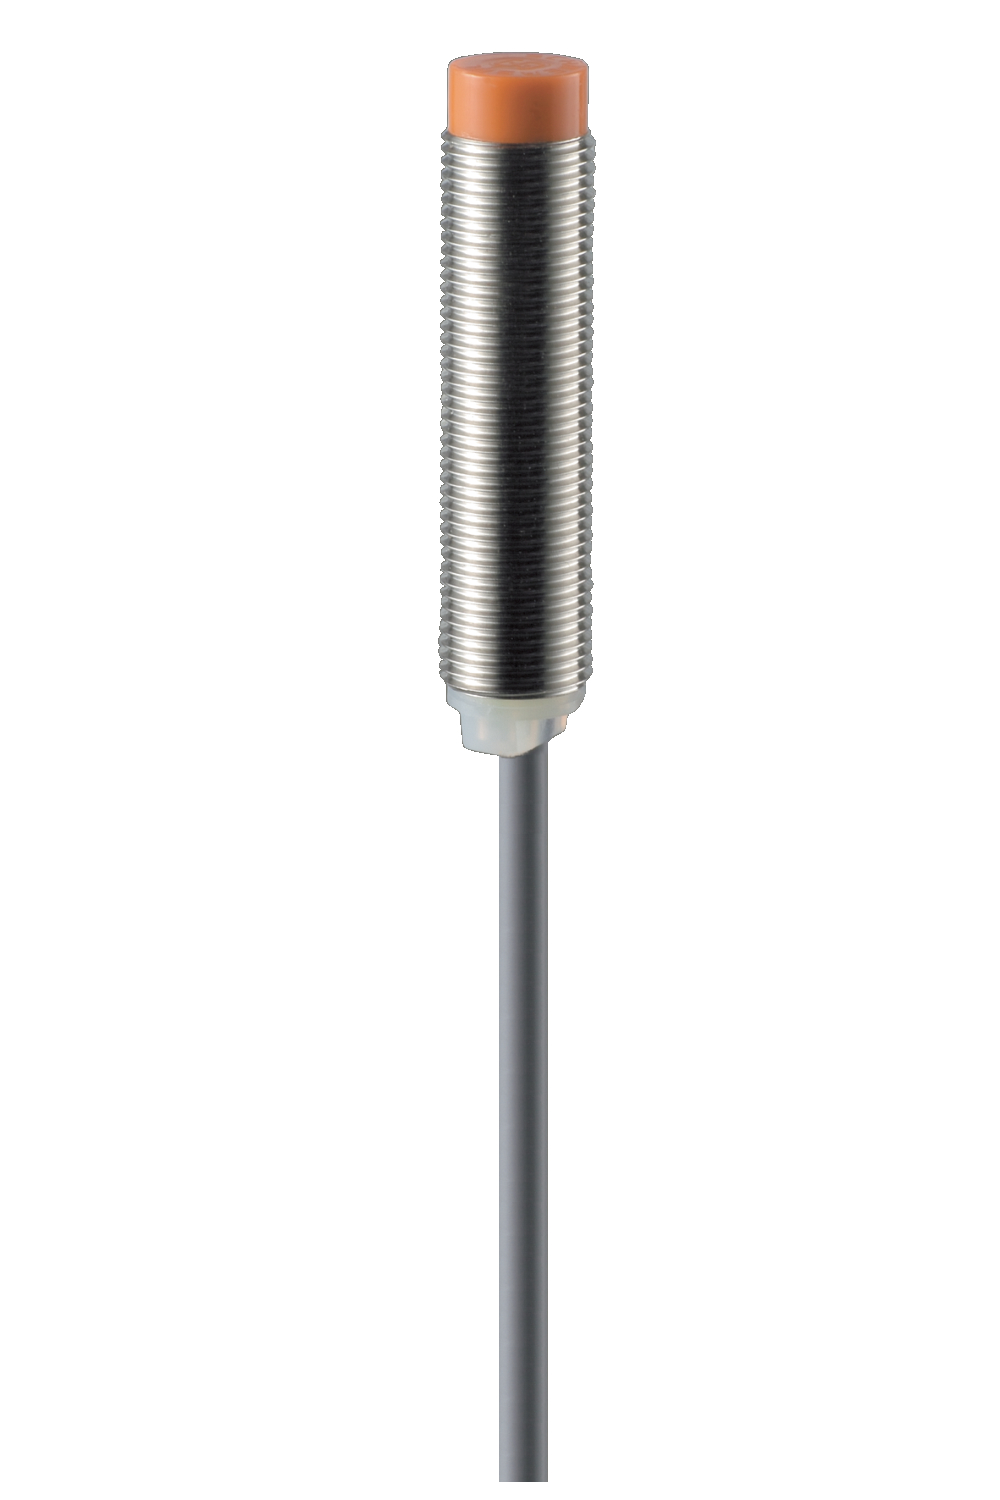 12mm 4mm Lenght IFL 4-12-10 Schmersal Inductive Sensor Sn diameter 71mm 